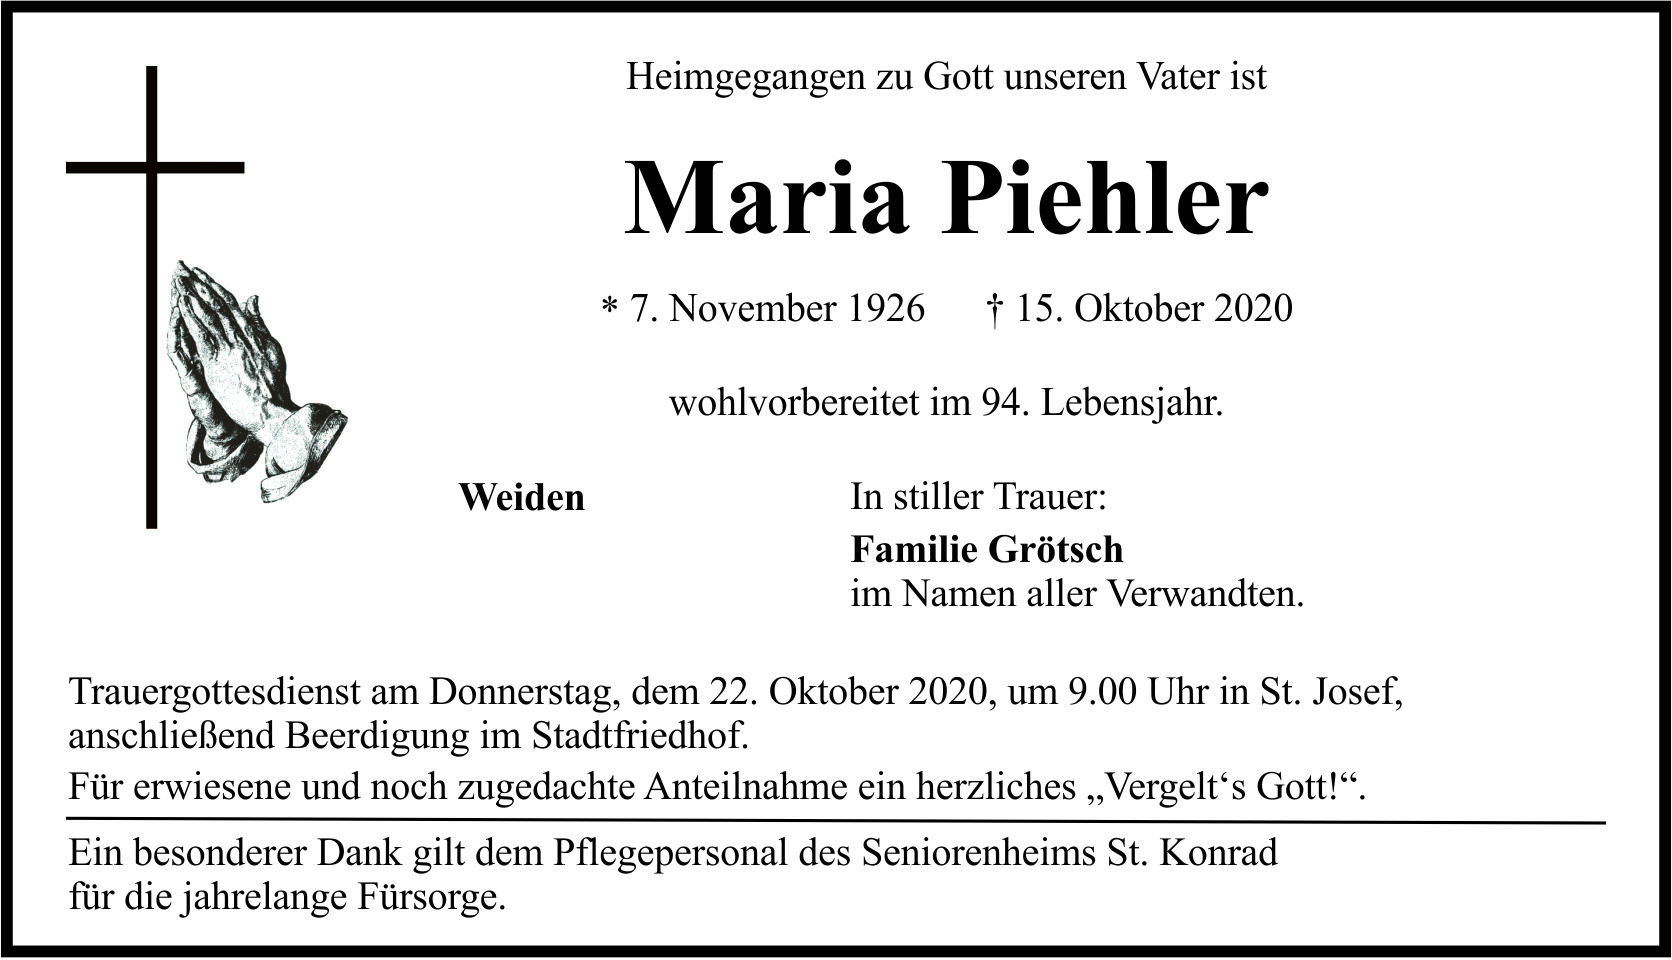 Traueranzeige Maria Piehler, Weiden